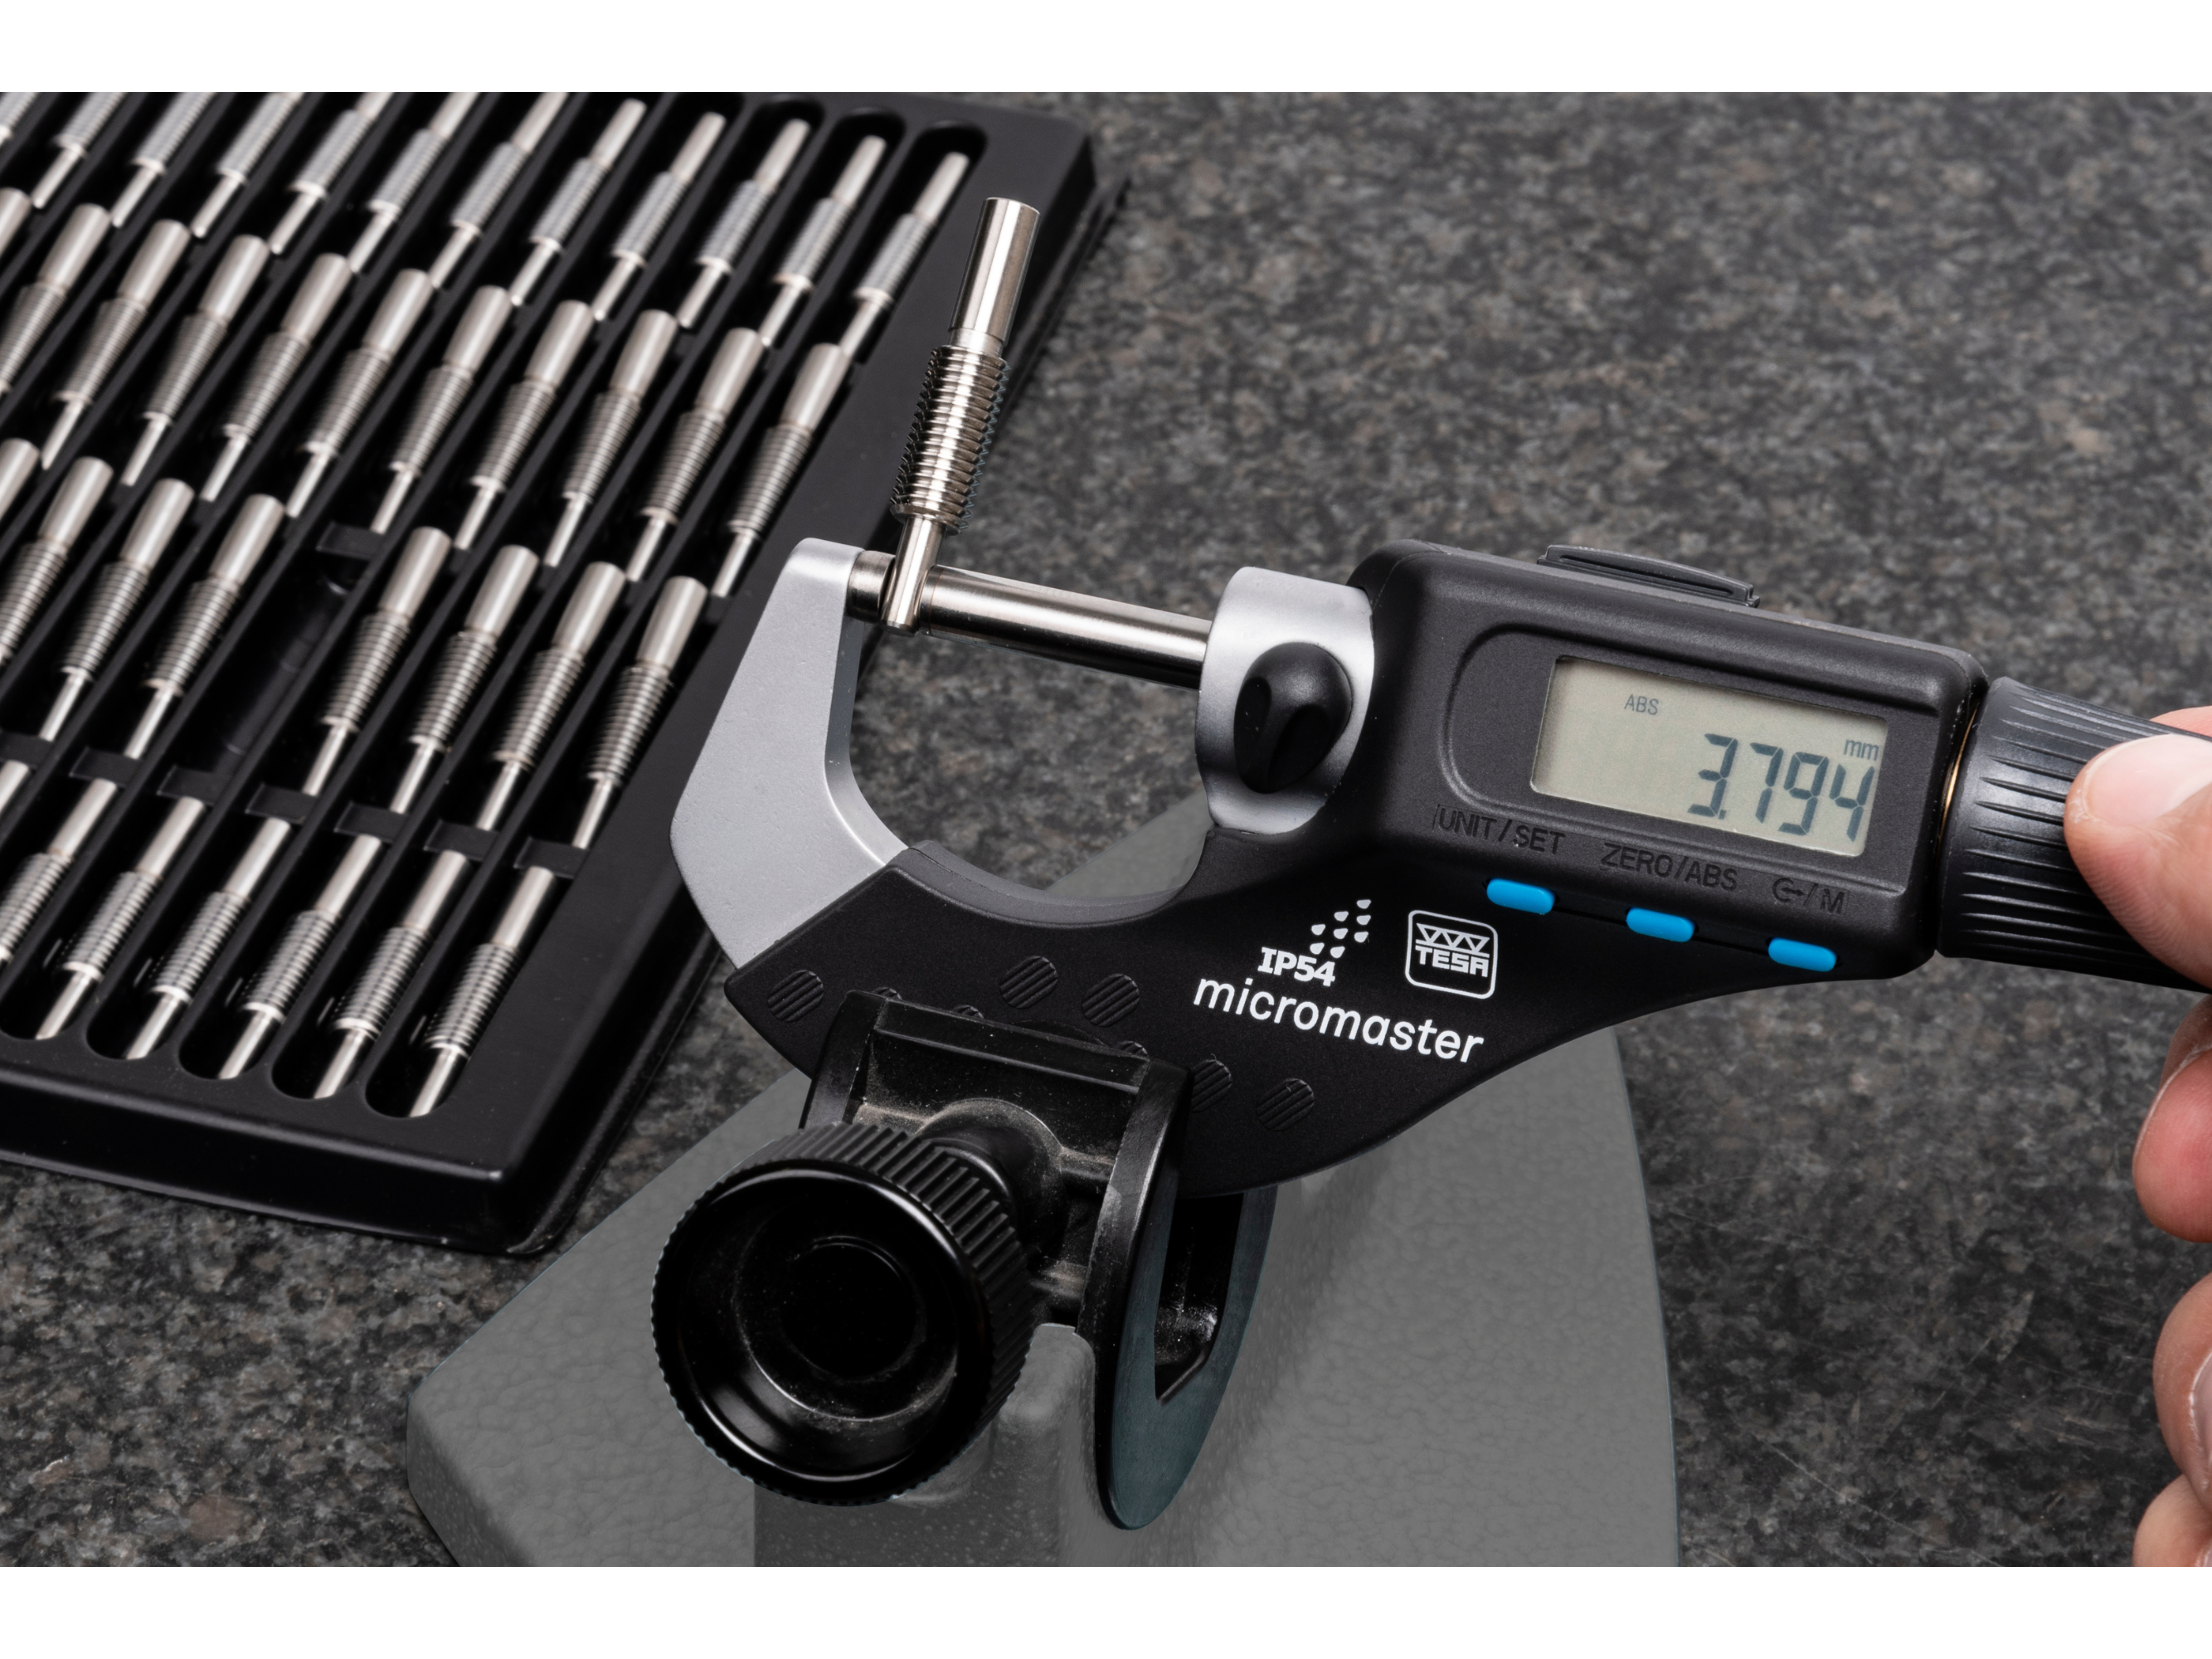 Tesa Micromaster Digital Micrometer Application